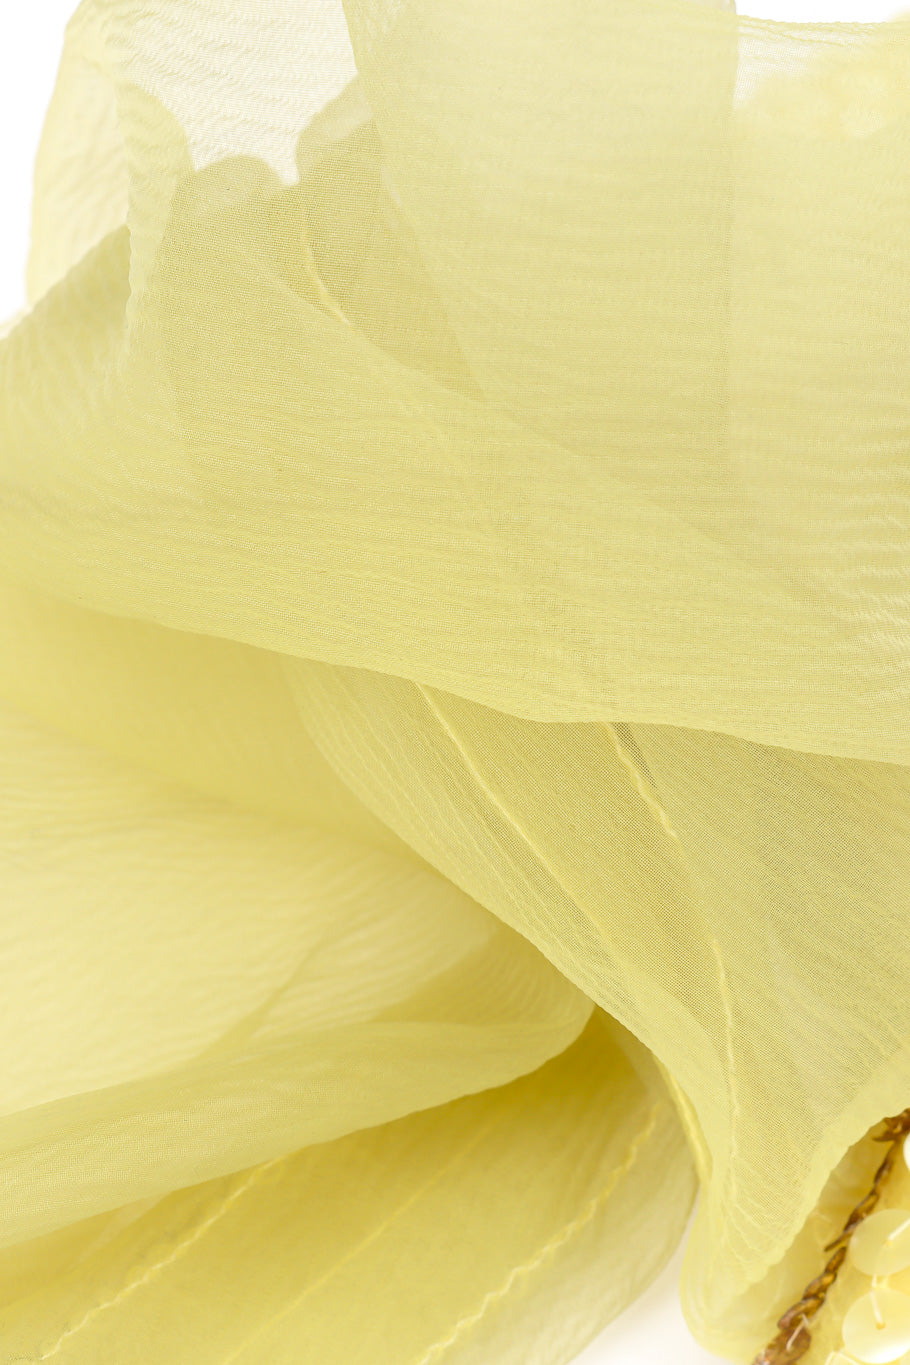 Vintage Courlande Silk Organza Flower Sequin Dress silk organza closeup @Recessla